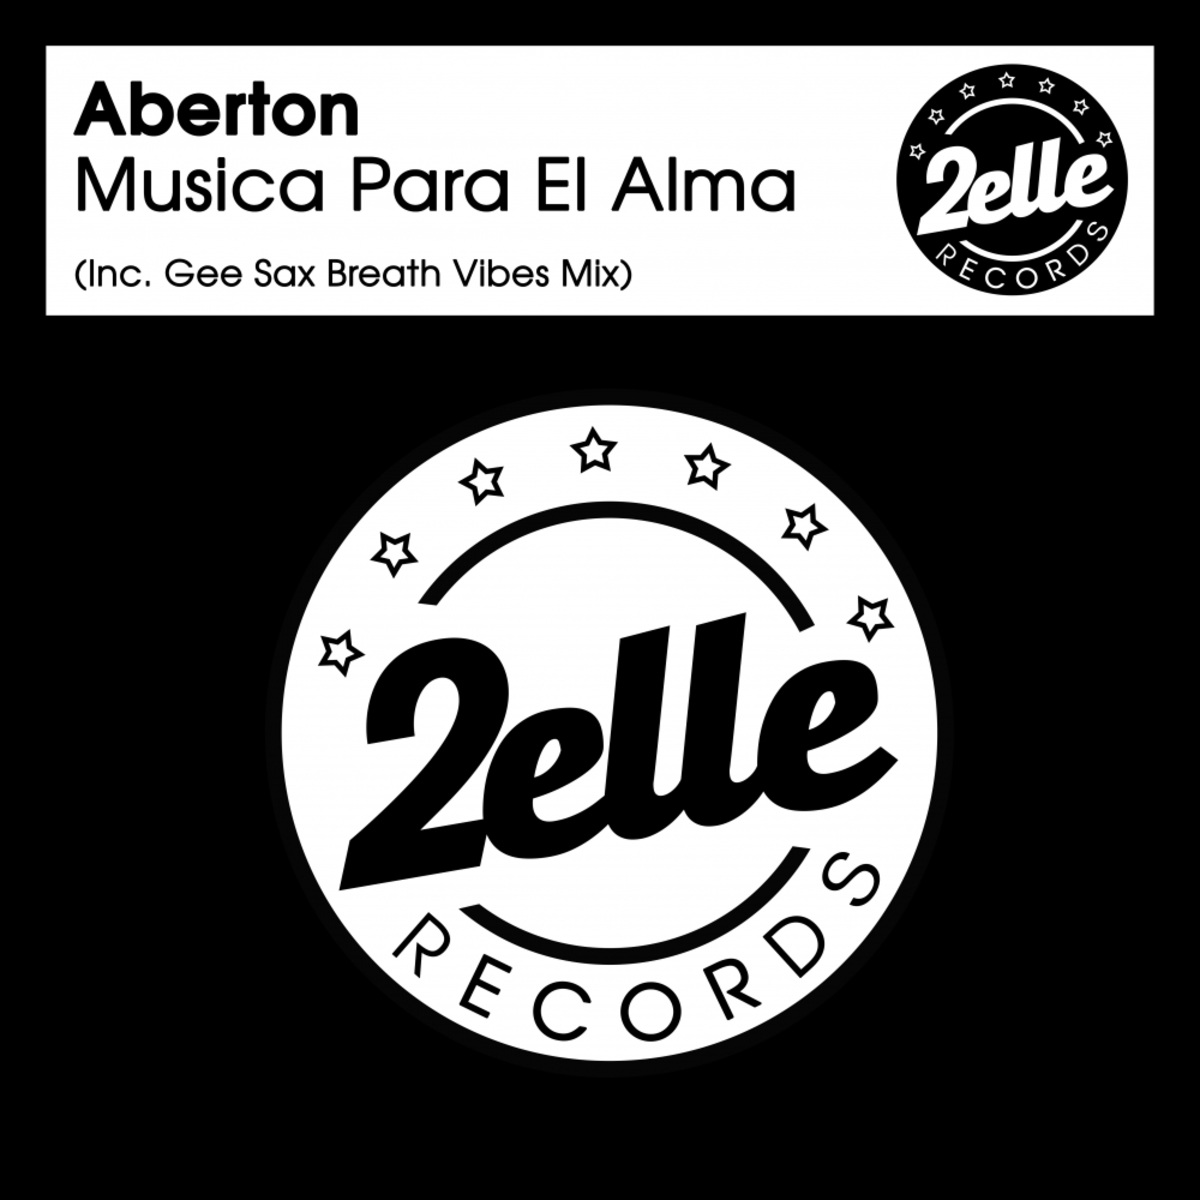 Aberton - Musica Para El Alma / 2EllE Records